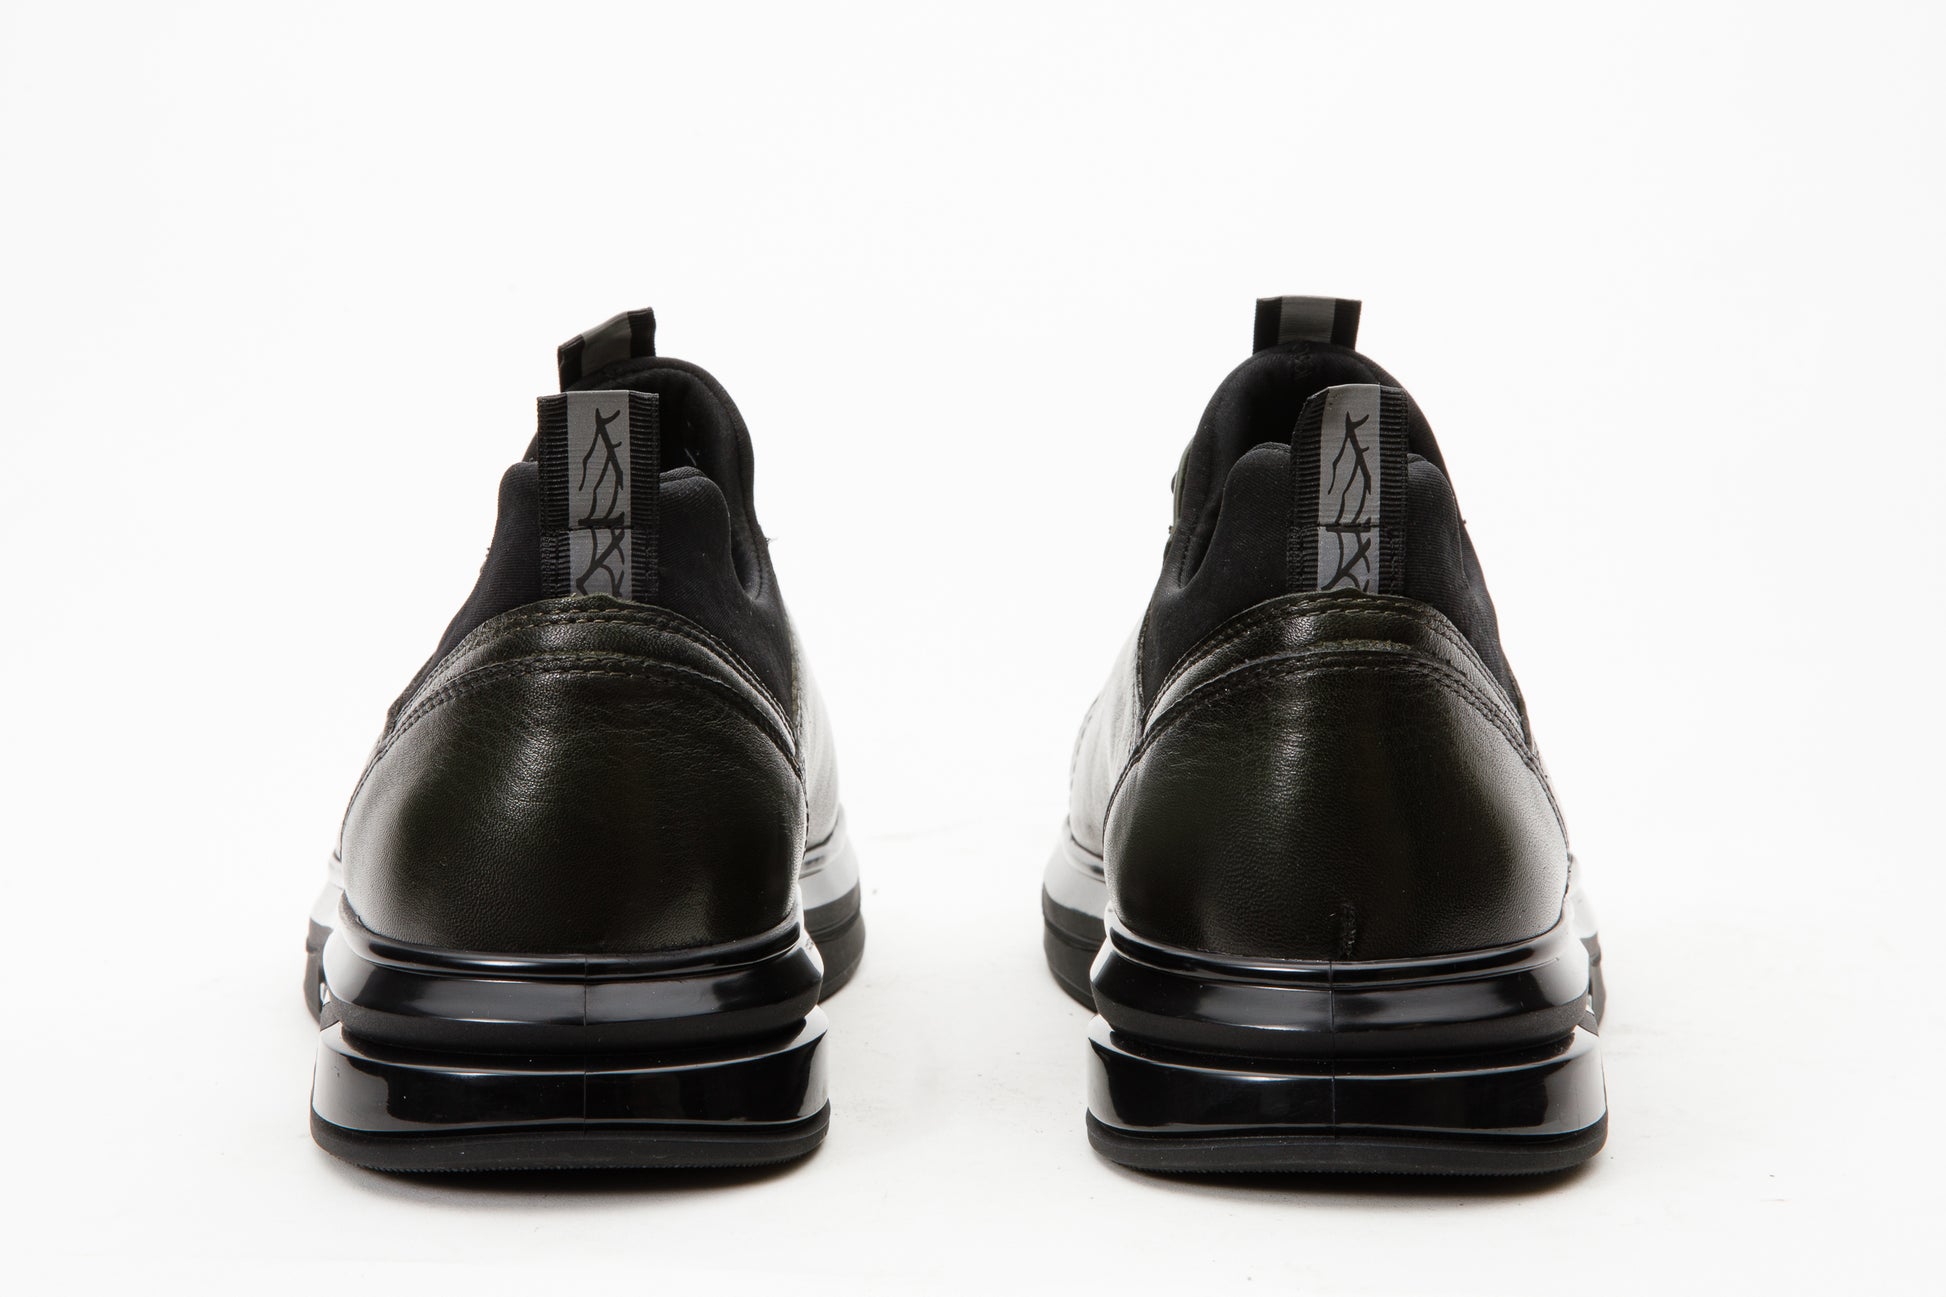 The Vilnius Green LeatherMen Sneaker – Vinci Leather Shoes